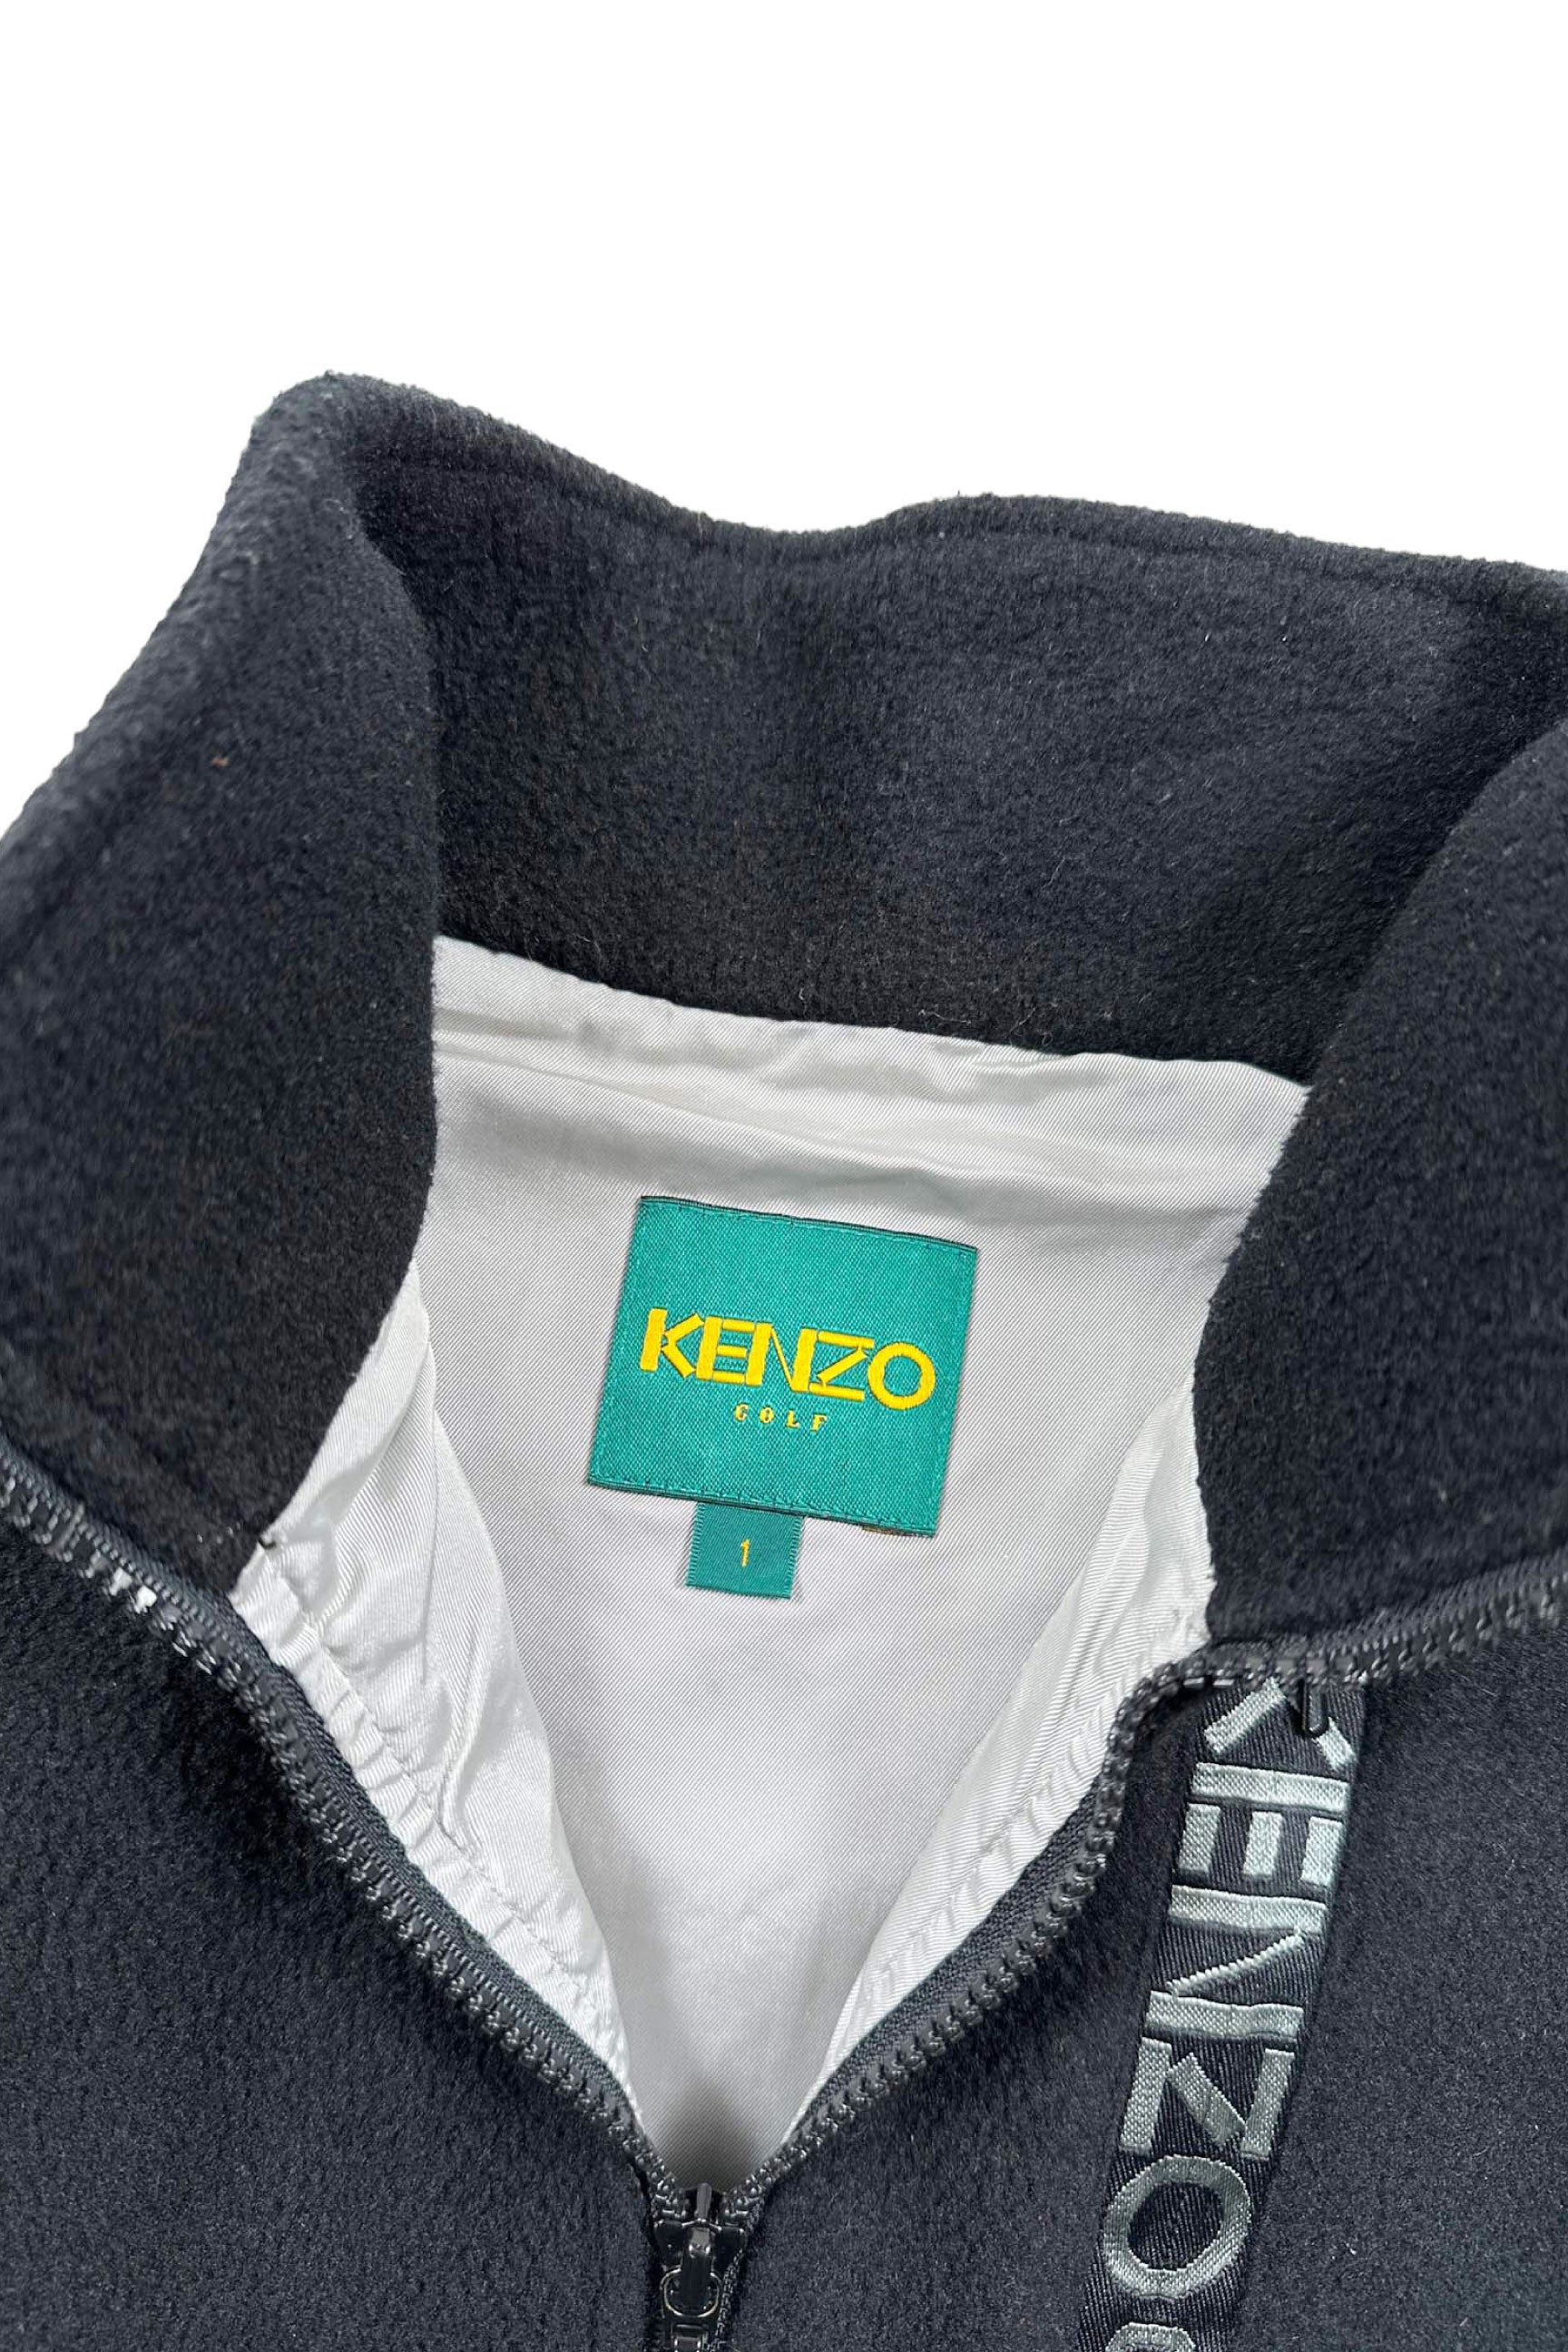 KENZO GOLF vest – ReSCOUNT STORE